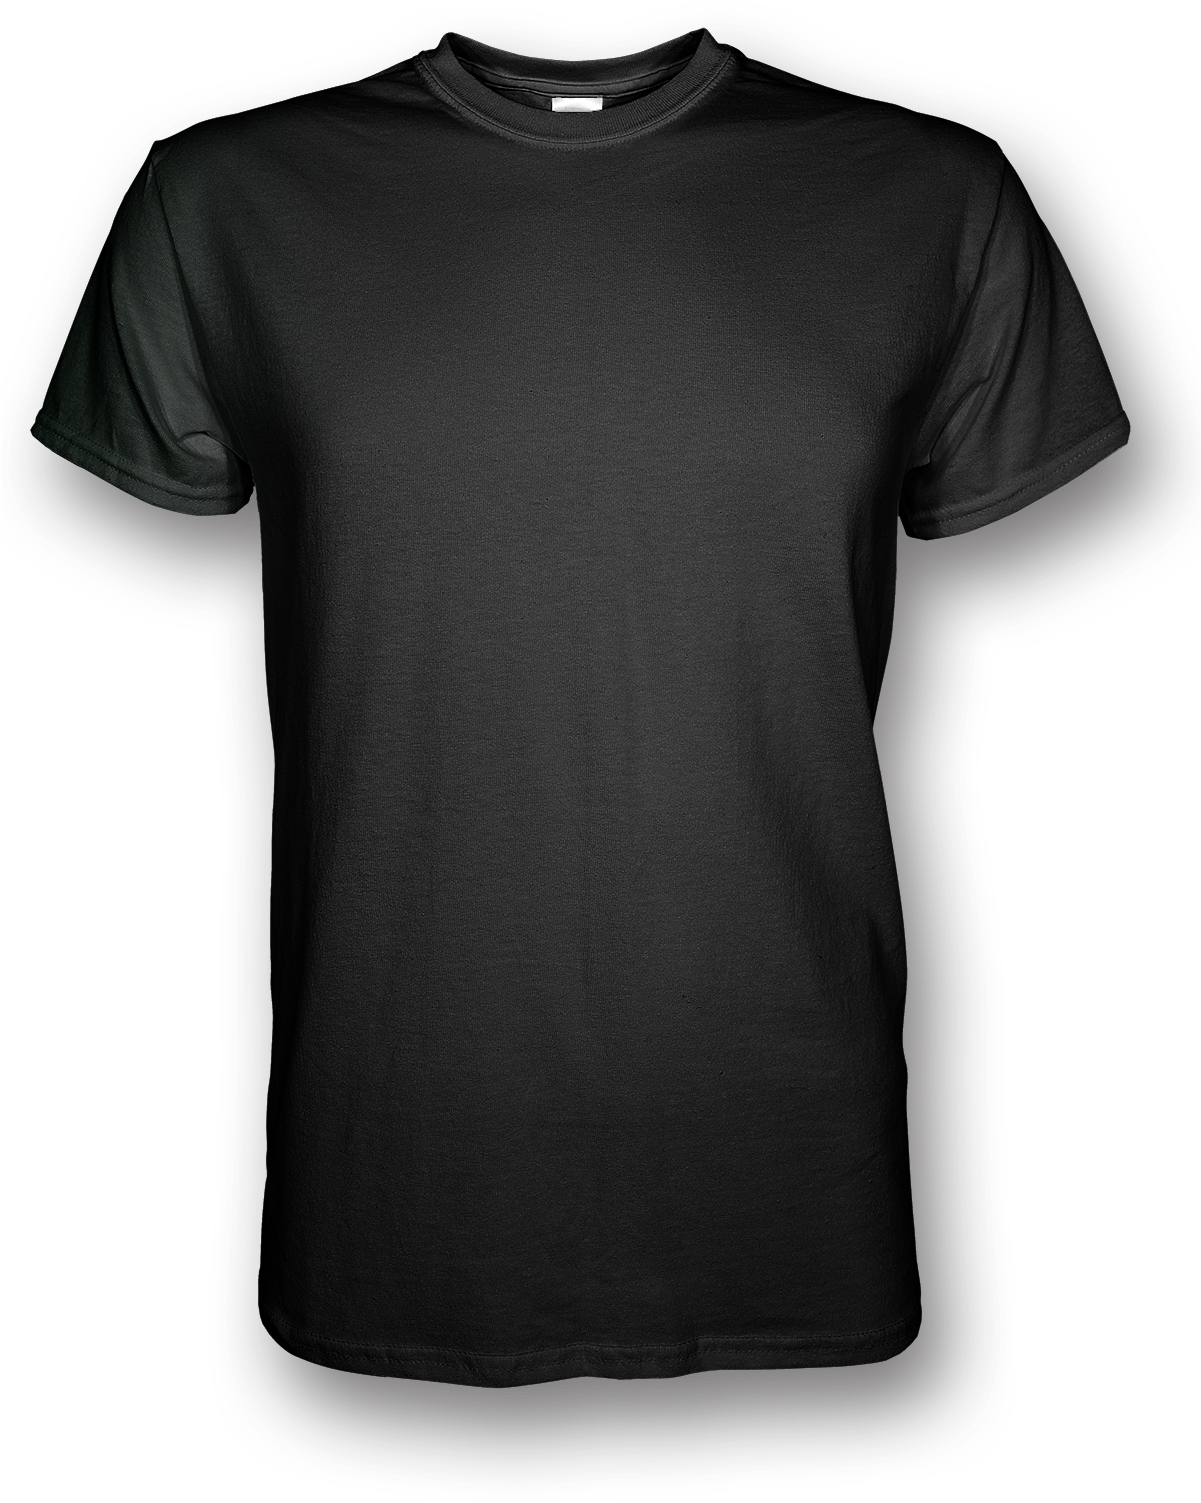 Basic T-Shirt Background PNG Image